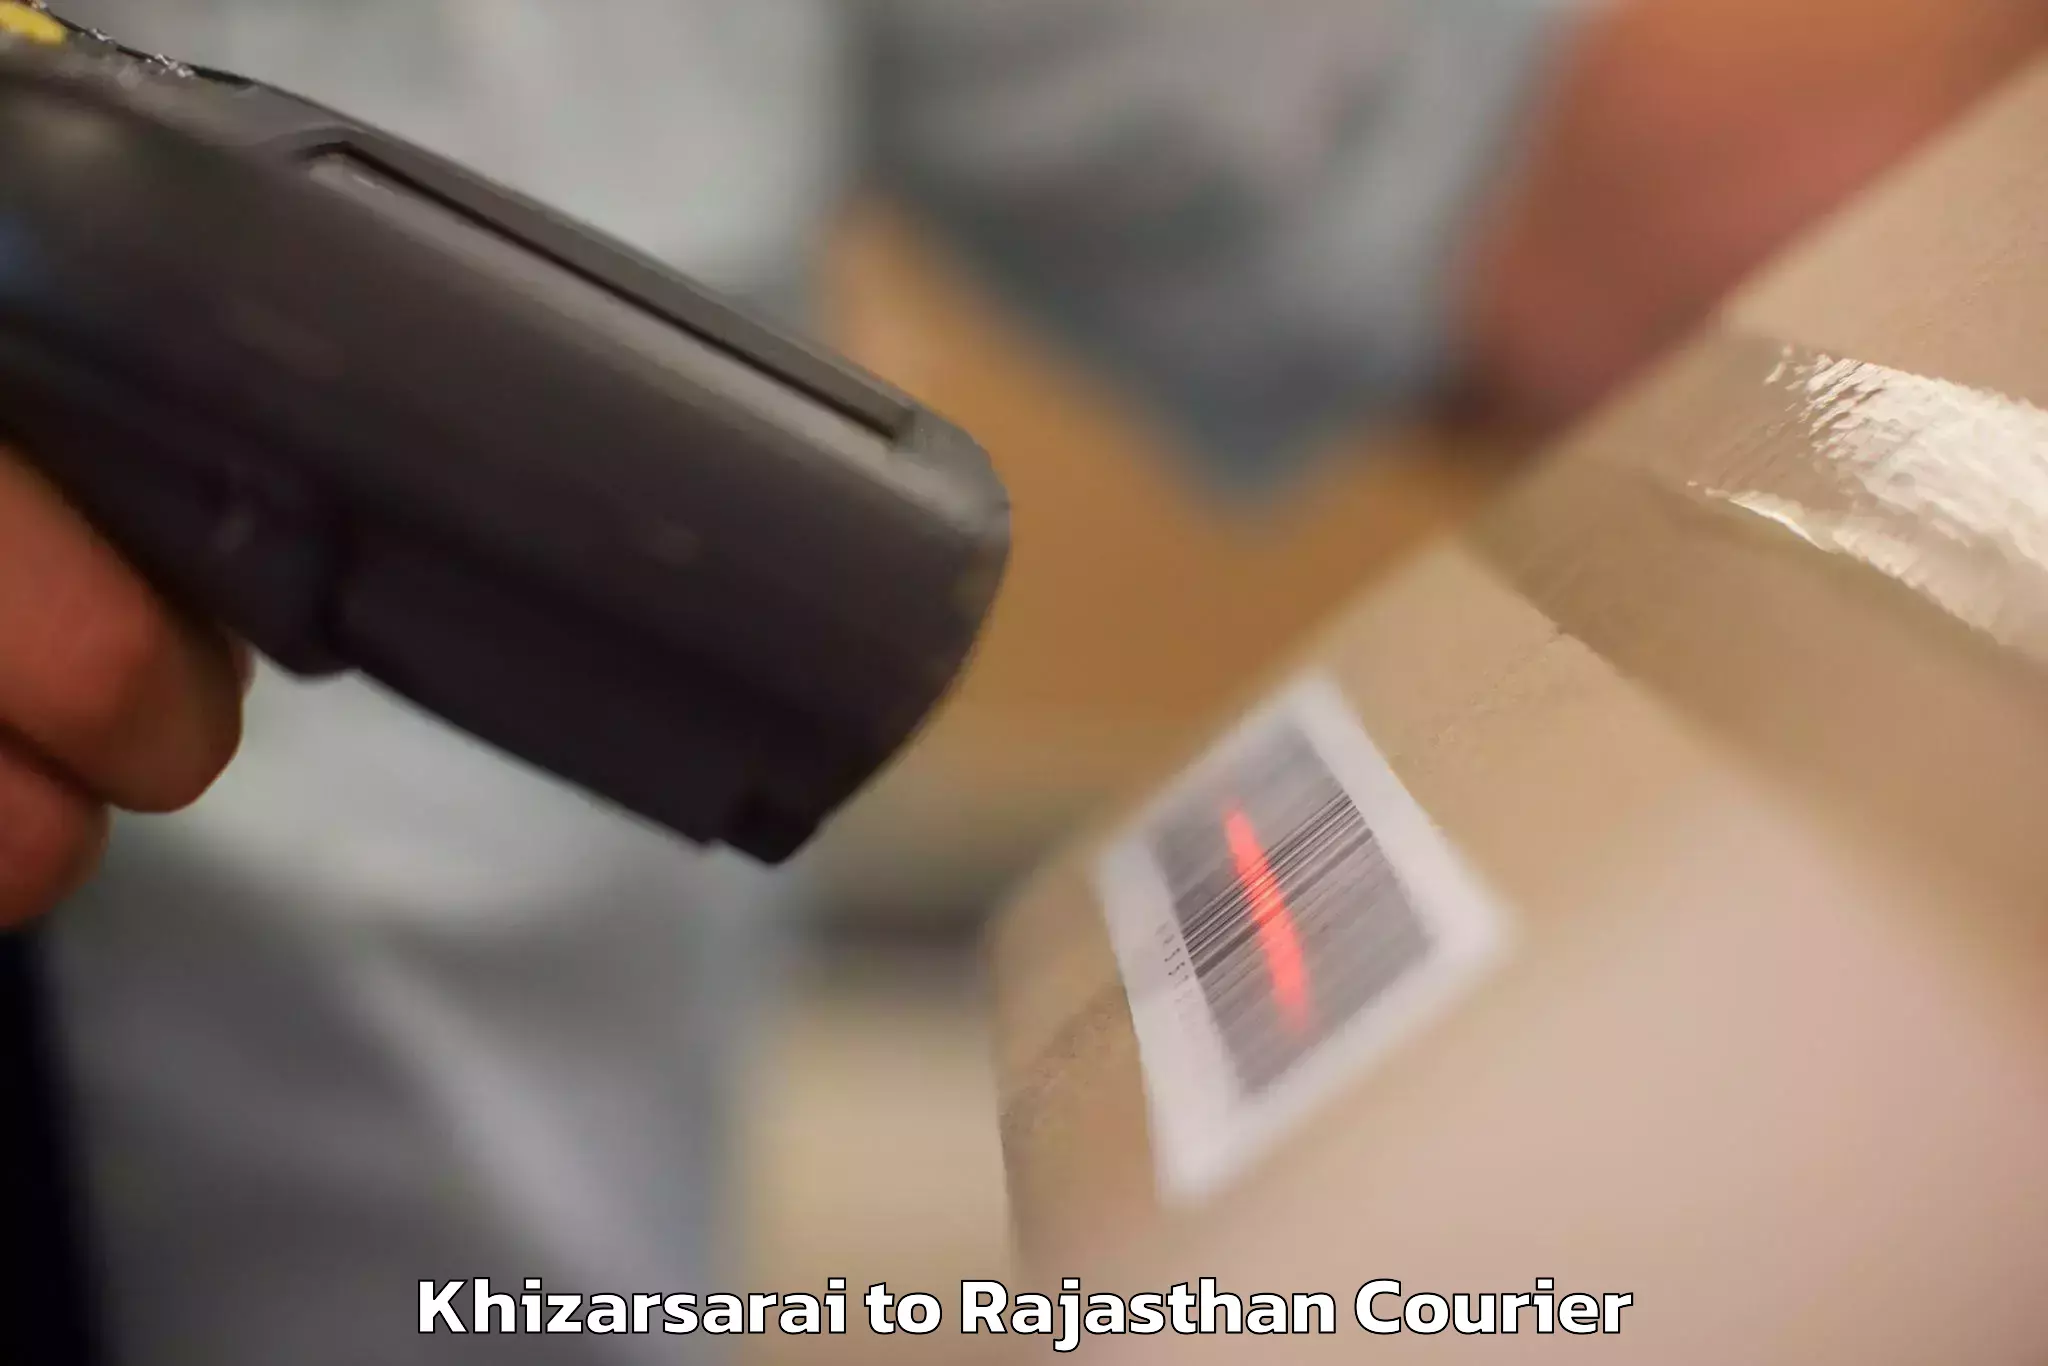 Global baggage shipping Khizarsarai to Rajasthan